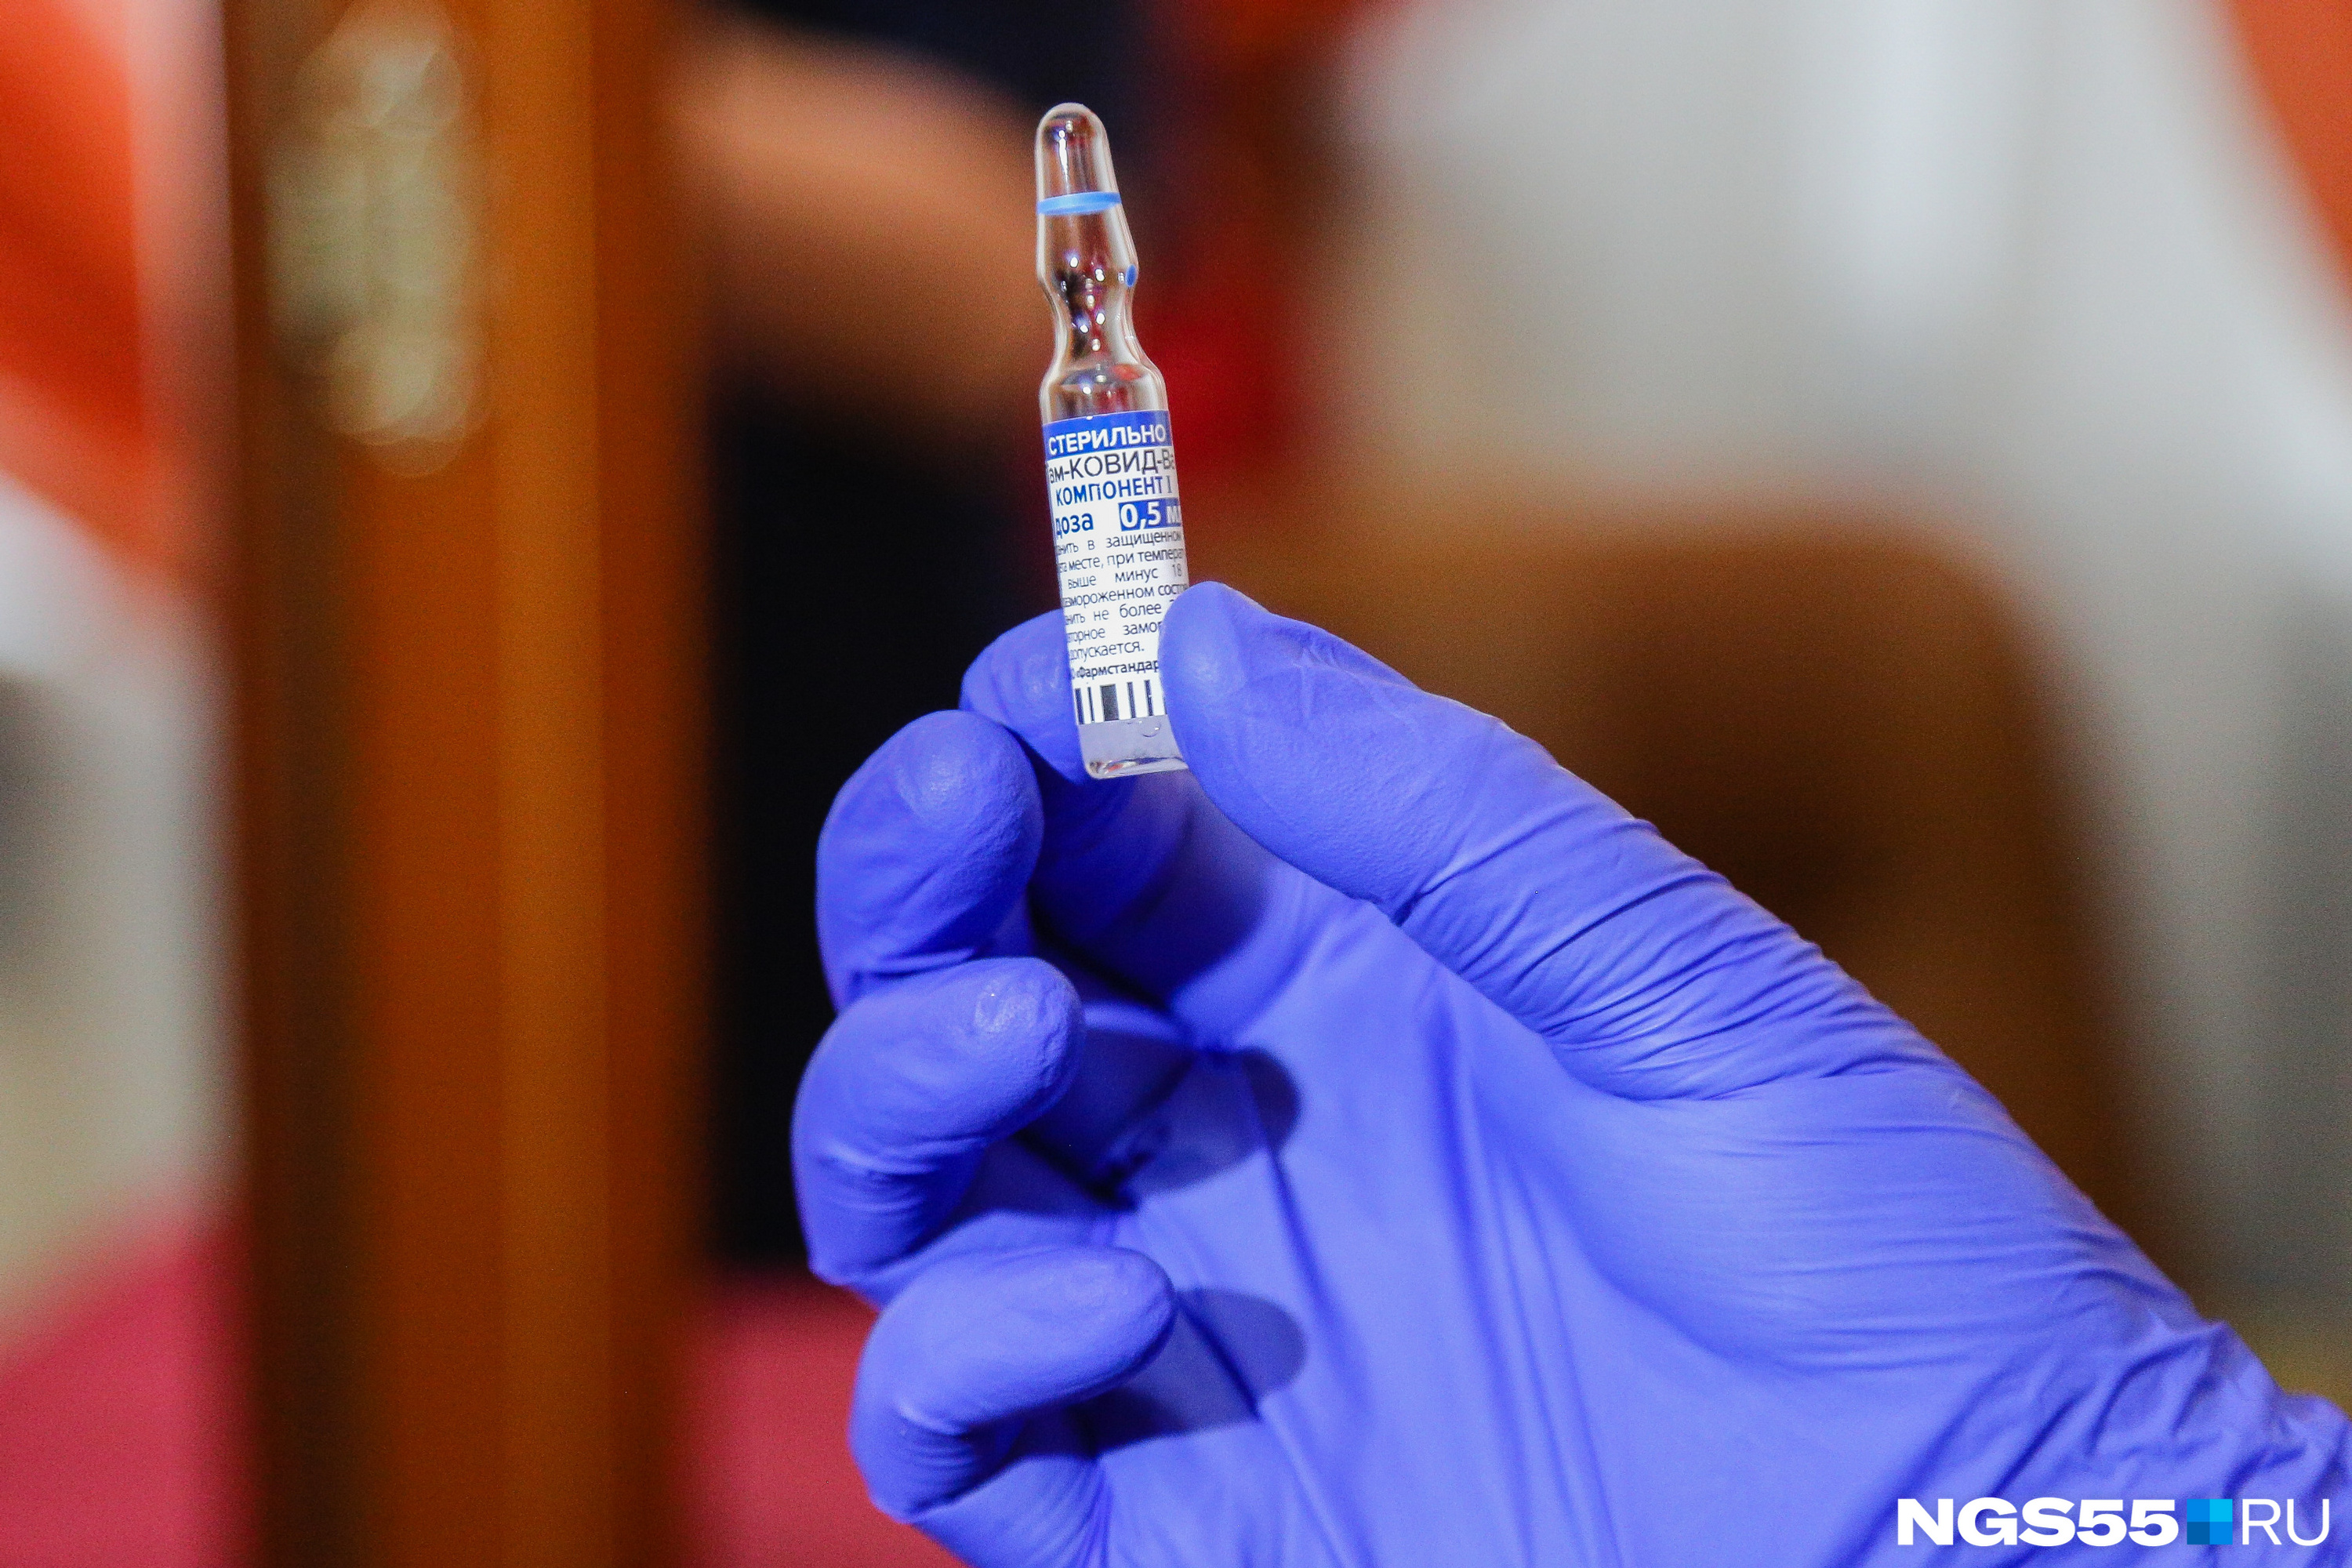 Омичам доступны три вакцины от коронавируса, все — российского производства